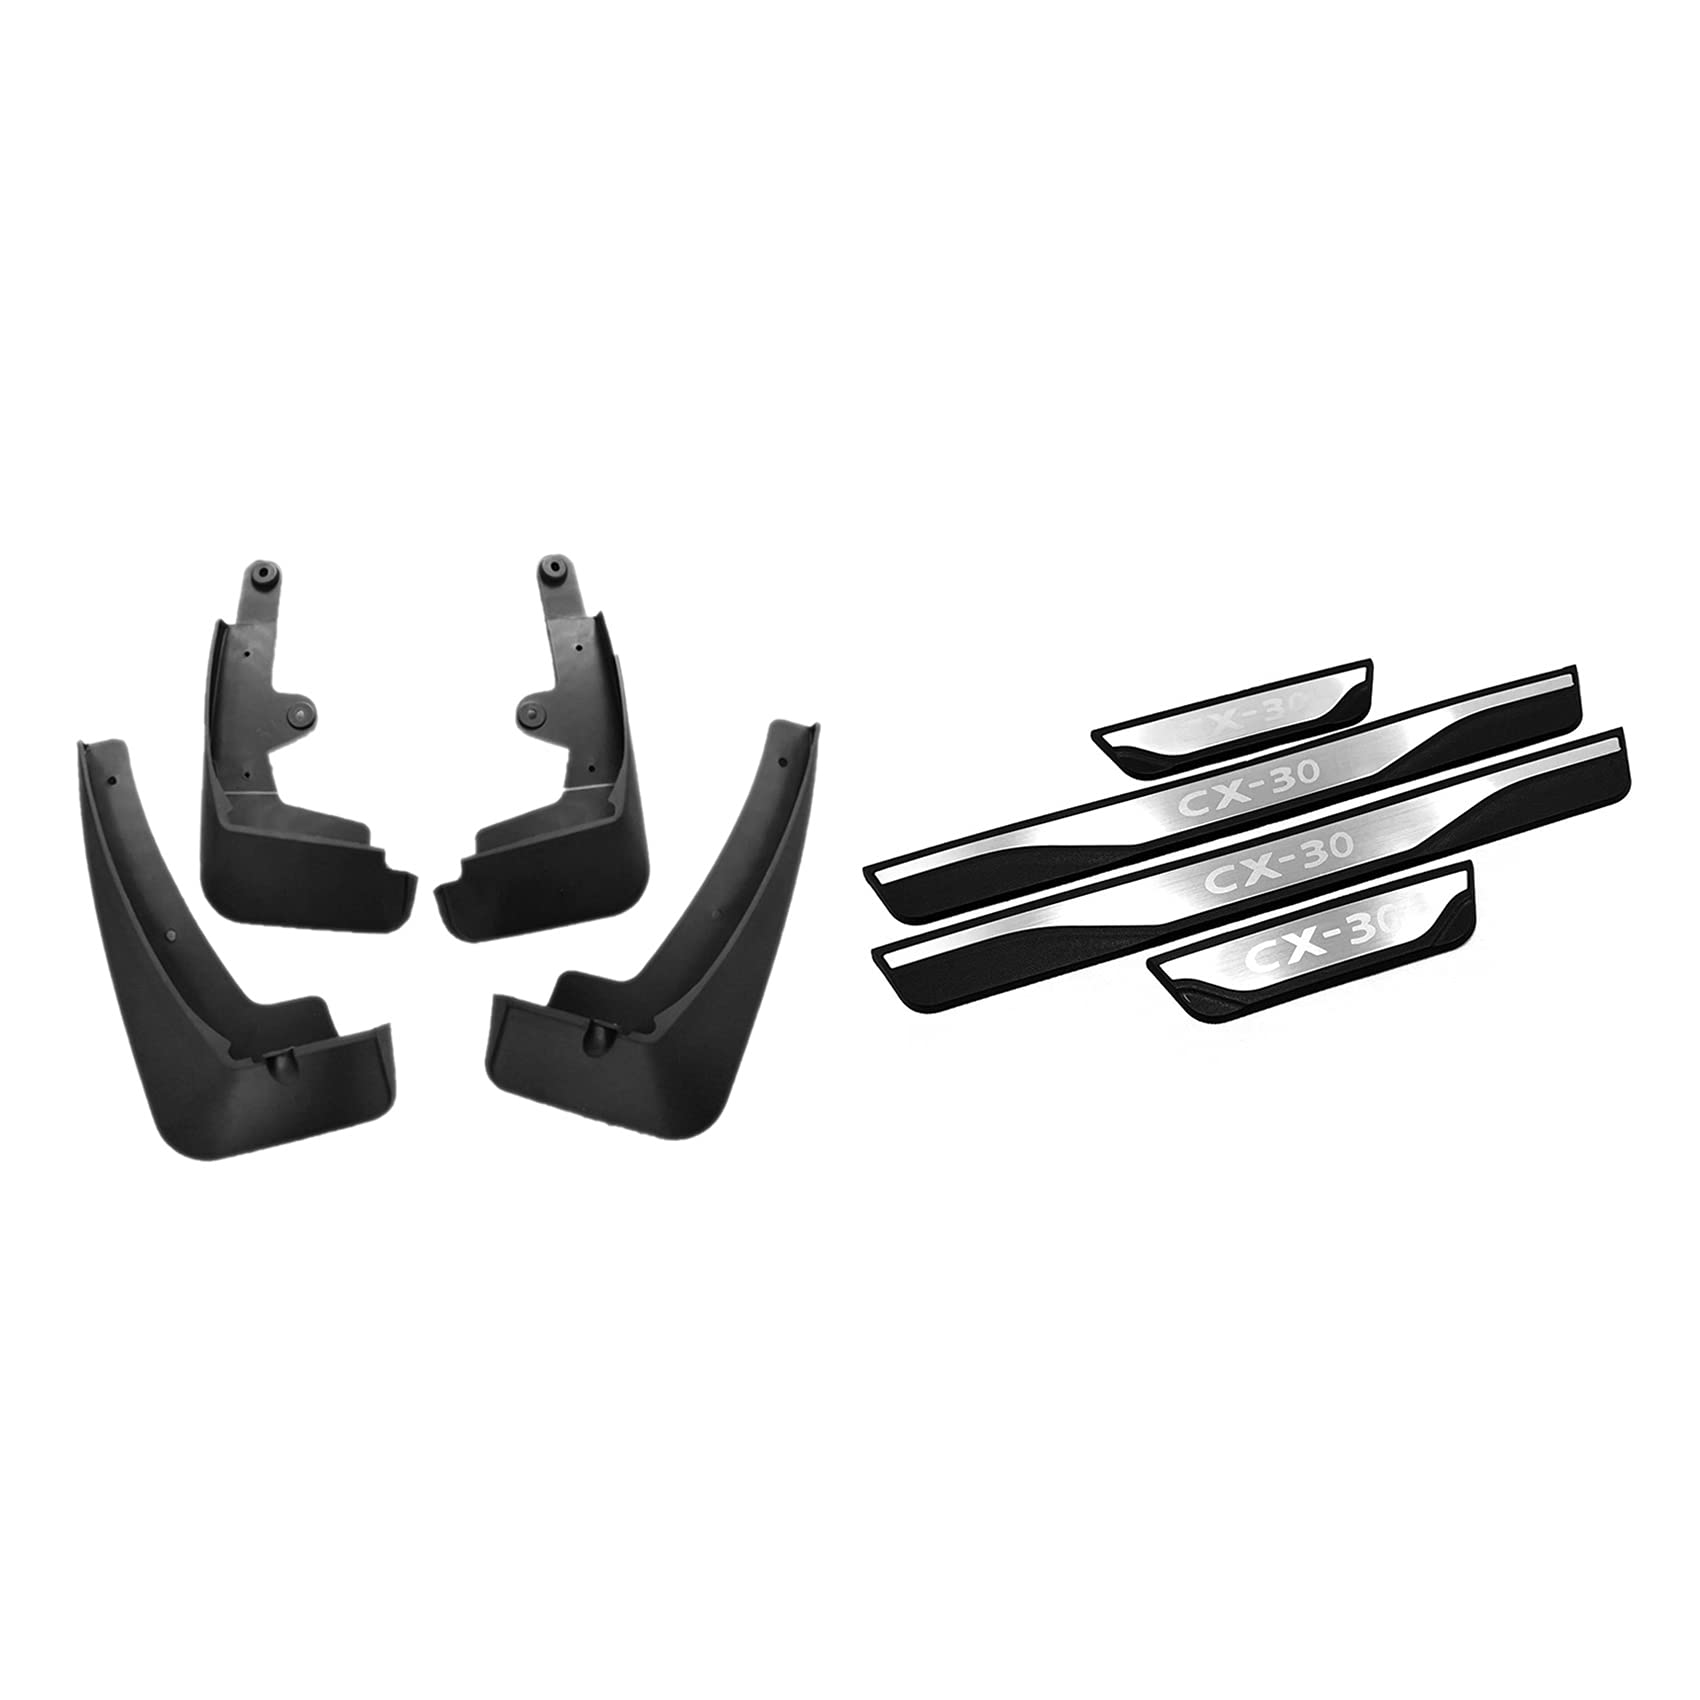 Einstiegsleisten Abdeckung Auto Edelstahl Scuff Pedal & für -30 CX30 2019 2020 Front & Rear Mud Flap Guard Fenders von Beelooom